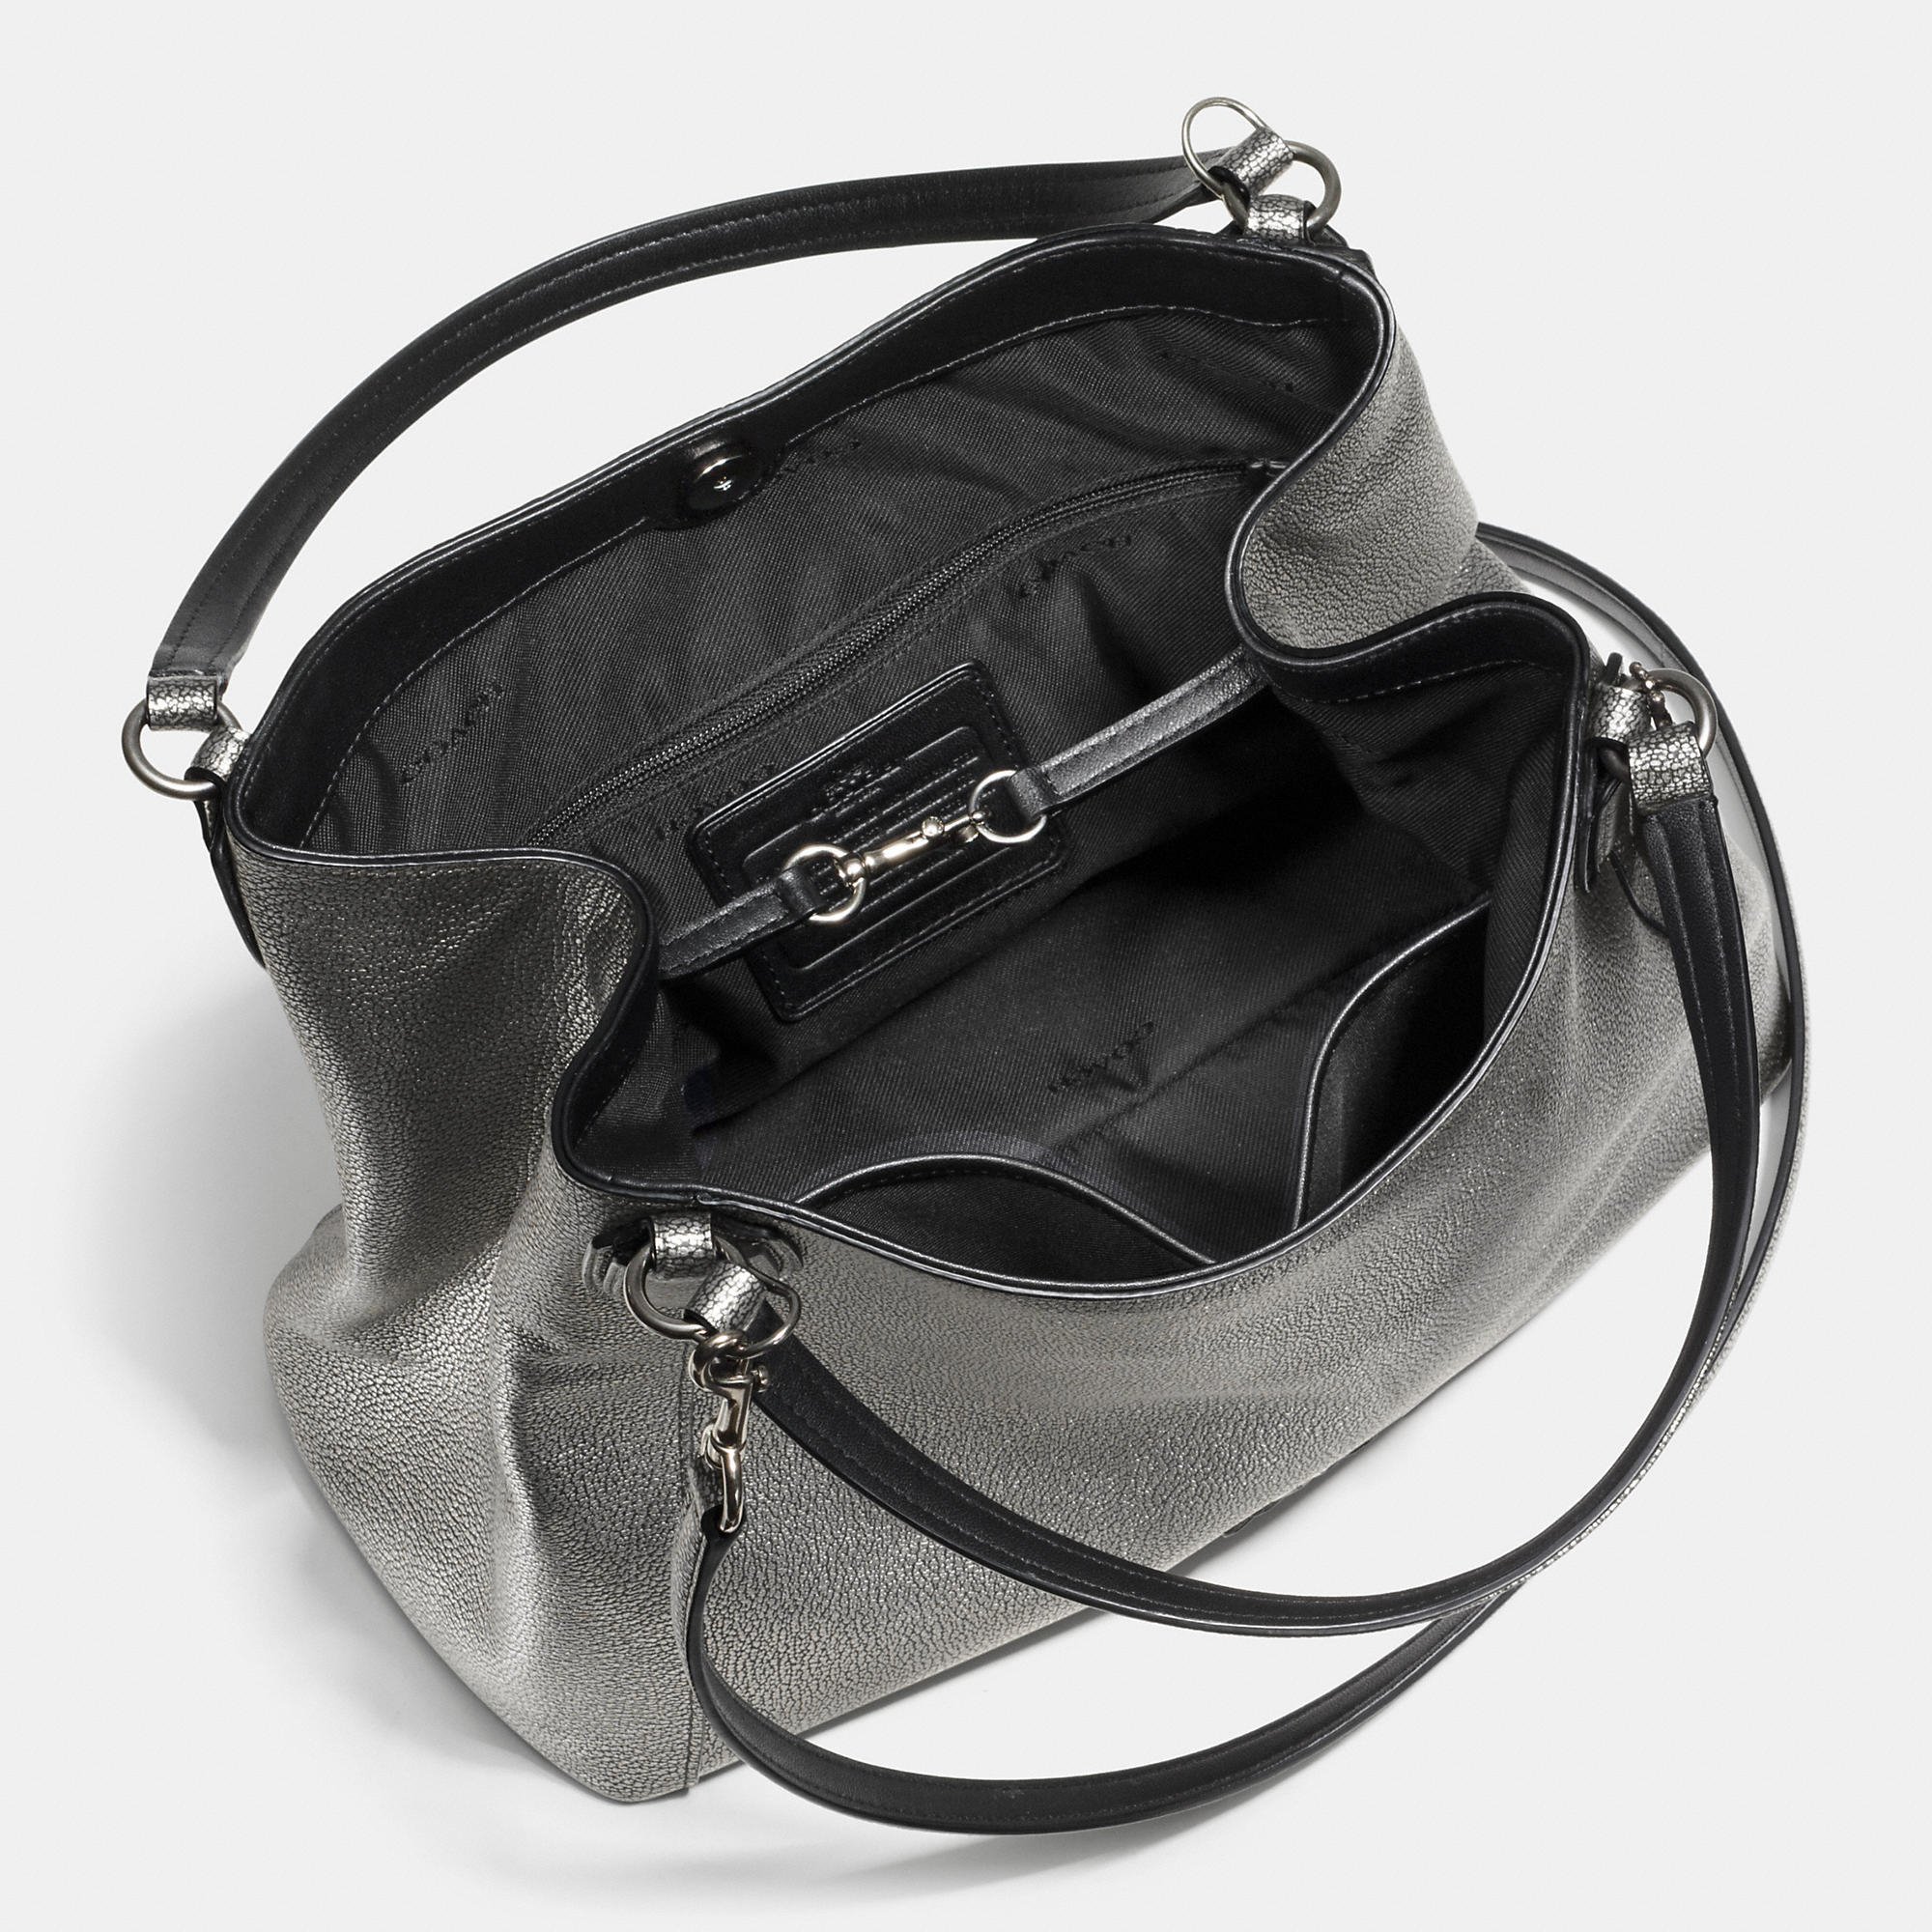 Lyst - Coach Edie Shoulder Bag 28 Metallic Pebble Leather in Black